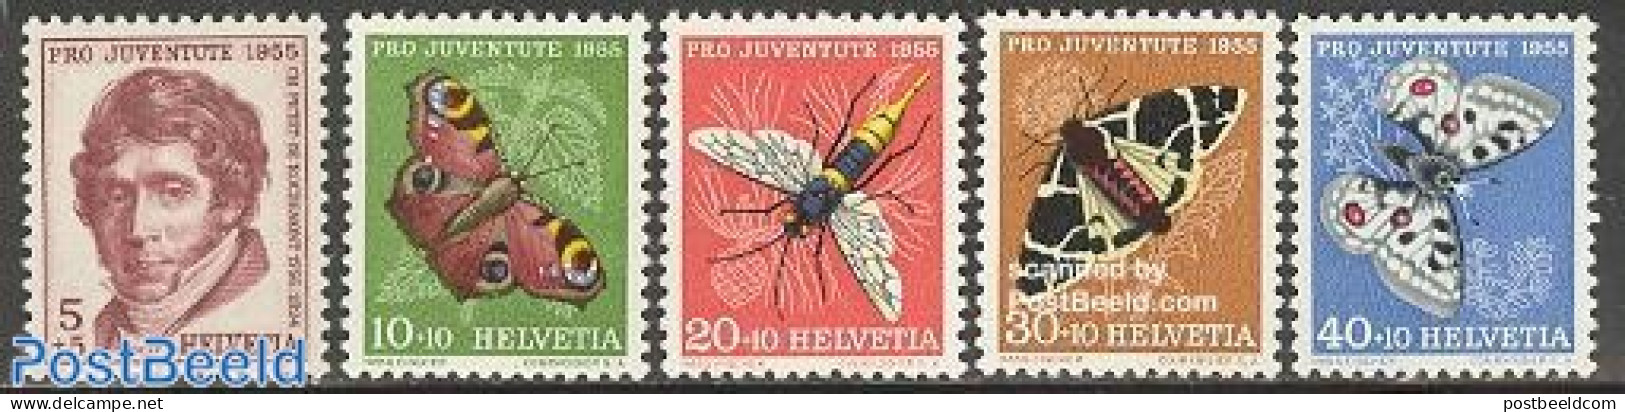 Switzerland 1955 Pro Juventute 5v, Mint NH, Nature - Butterflies - Insects - Ongebruikt